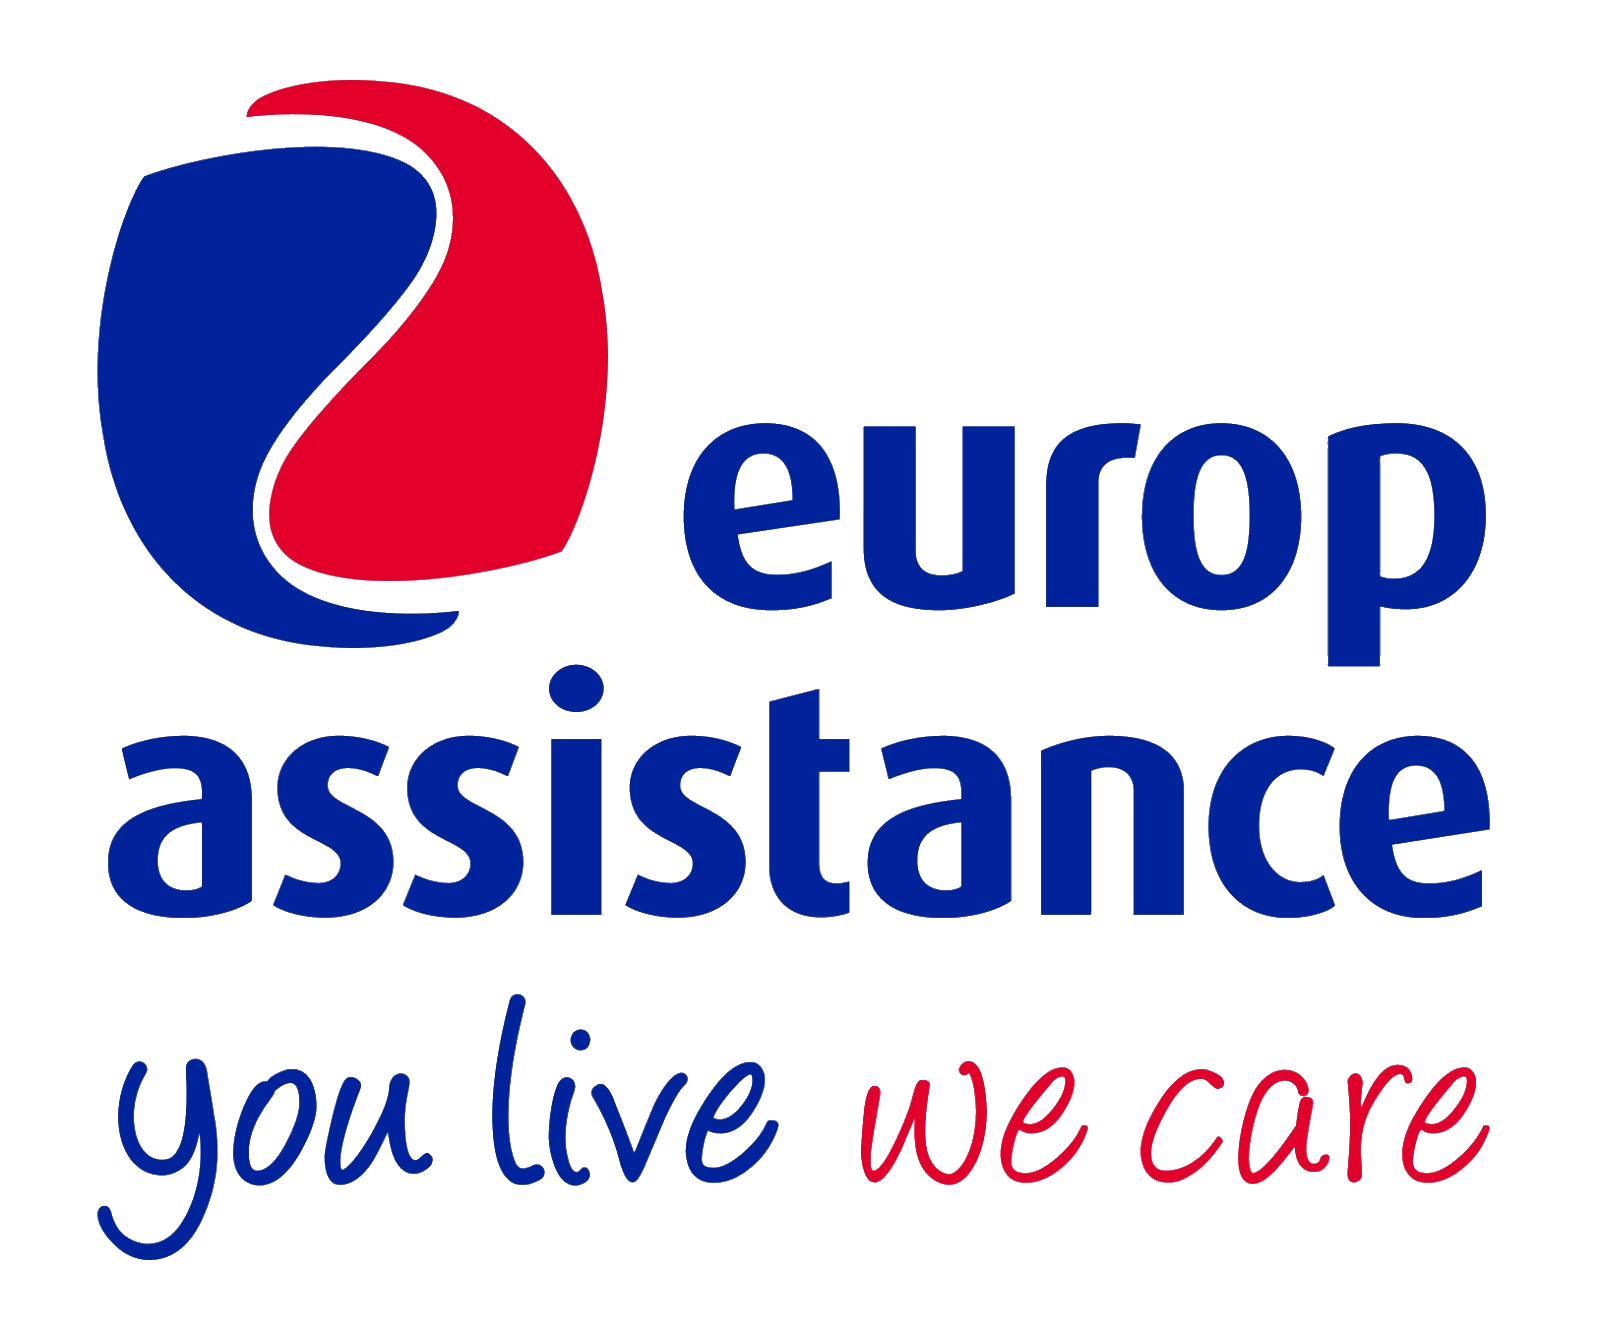 europ-assistance